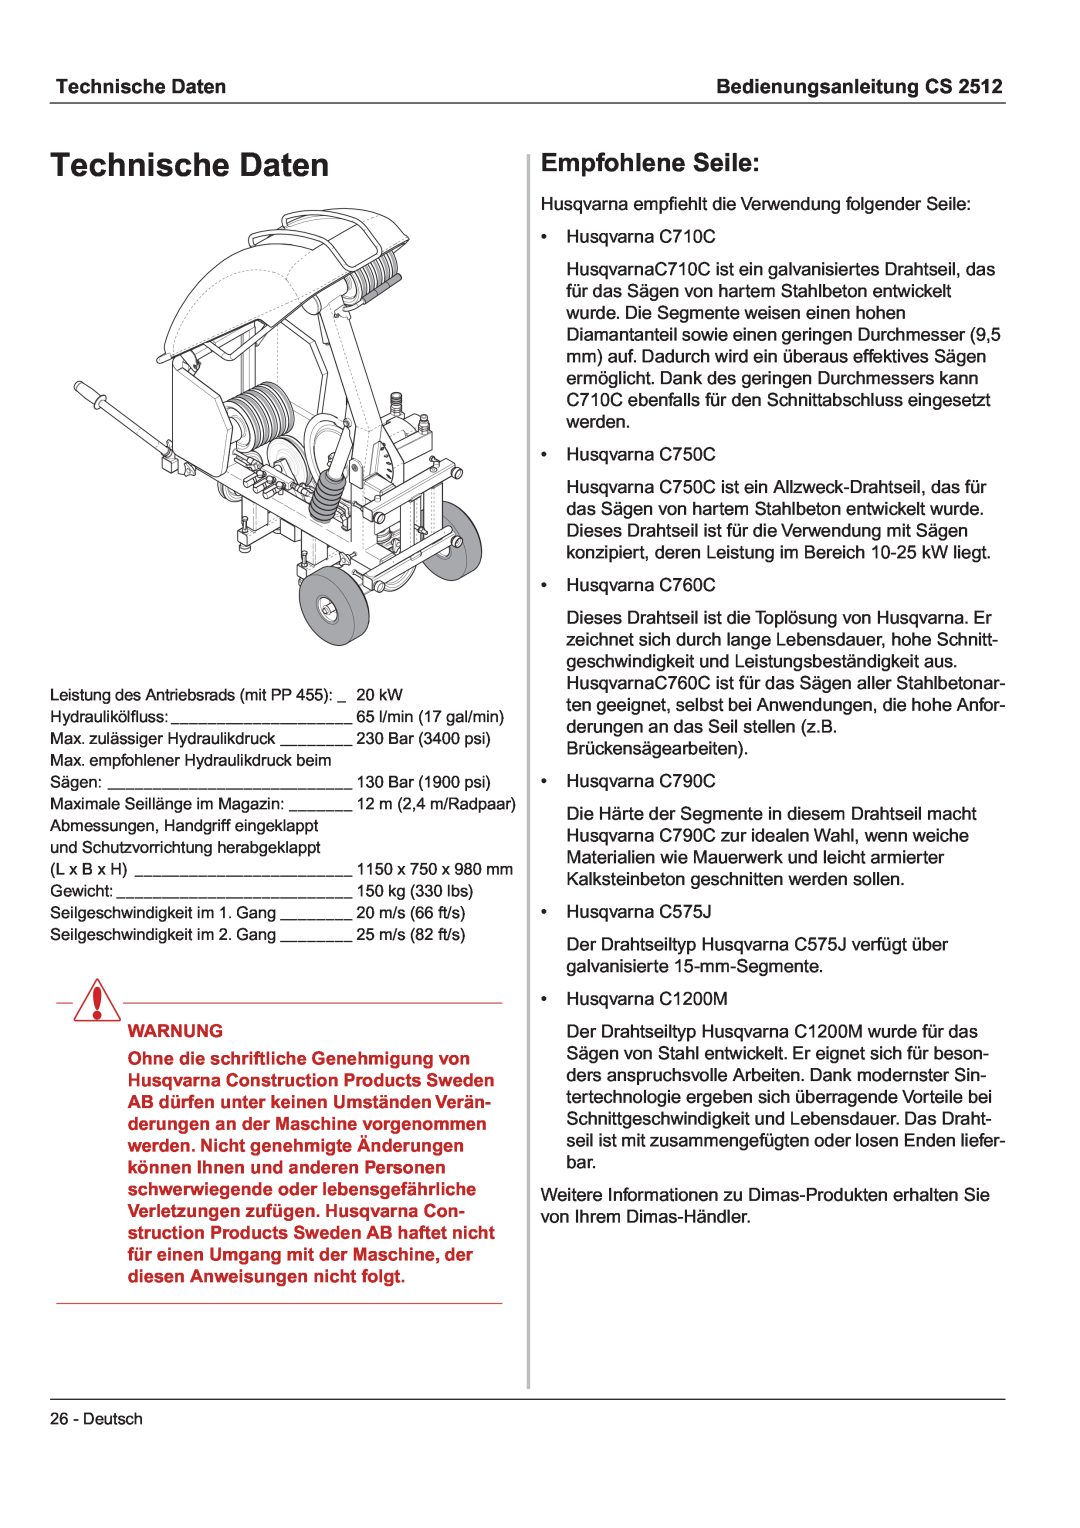 Husqvarna CS 2512 manual Technische Daten, Empfohlene Seile, Bedienungsanleitung CS, Warnung 